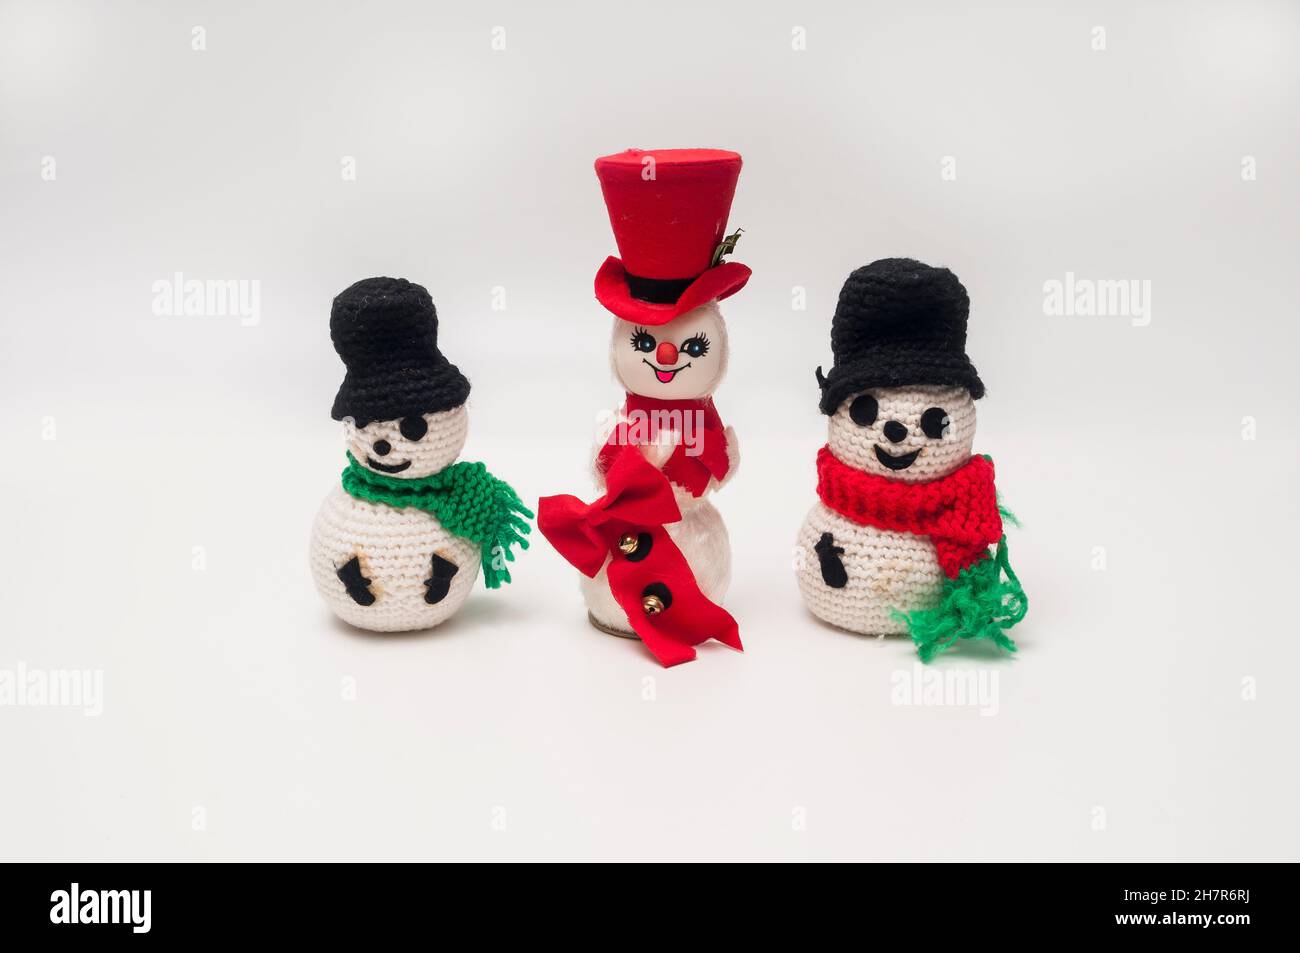 Tre piccoli pupazzi di neve con un tema di Natale. Tutti hanno sciarpe e cappelli. Uno ha un cappello rosso, mentre gli altri due hanno un cappello nero. Foto Stock